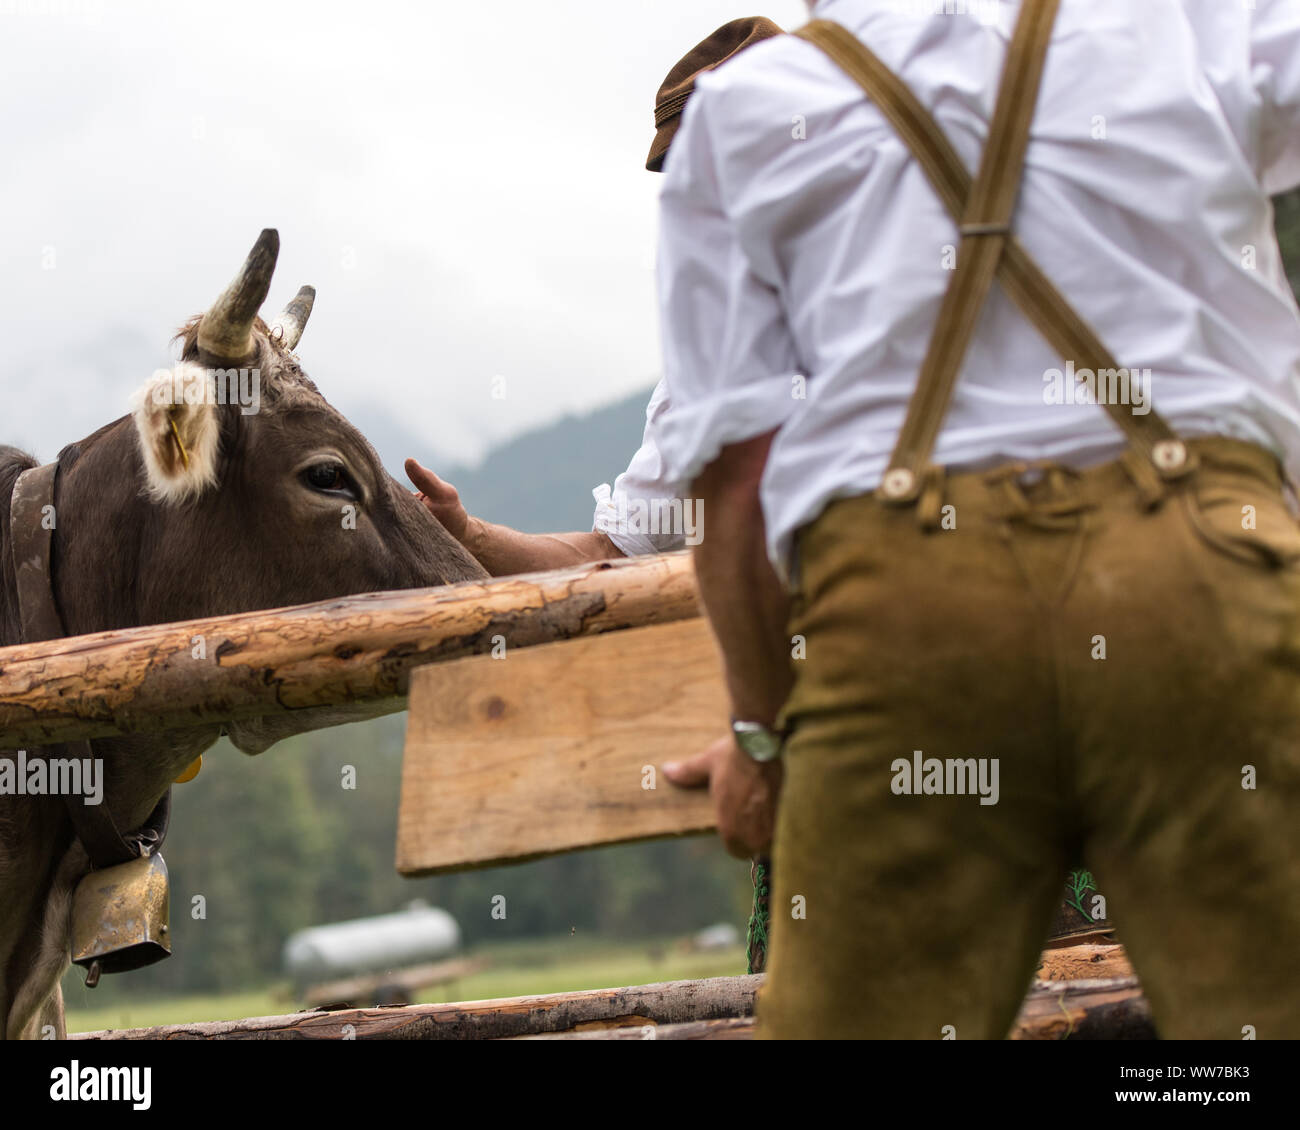 Viehscheid' nach dem Almabtrieb (zeremonielle Fahren hinunter von Rindern von der Alm ins Tal im Herbst) im Spätsommer in Bayern, Kuh Besitzer übergeben. Stockfoto